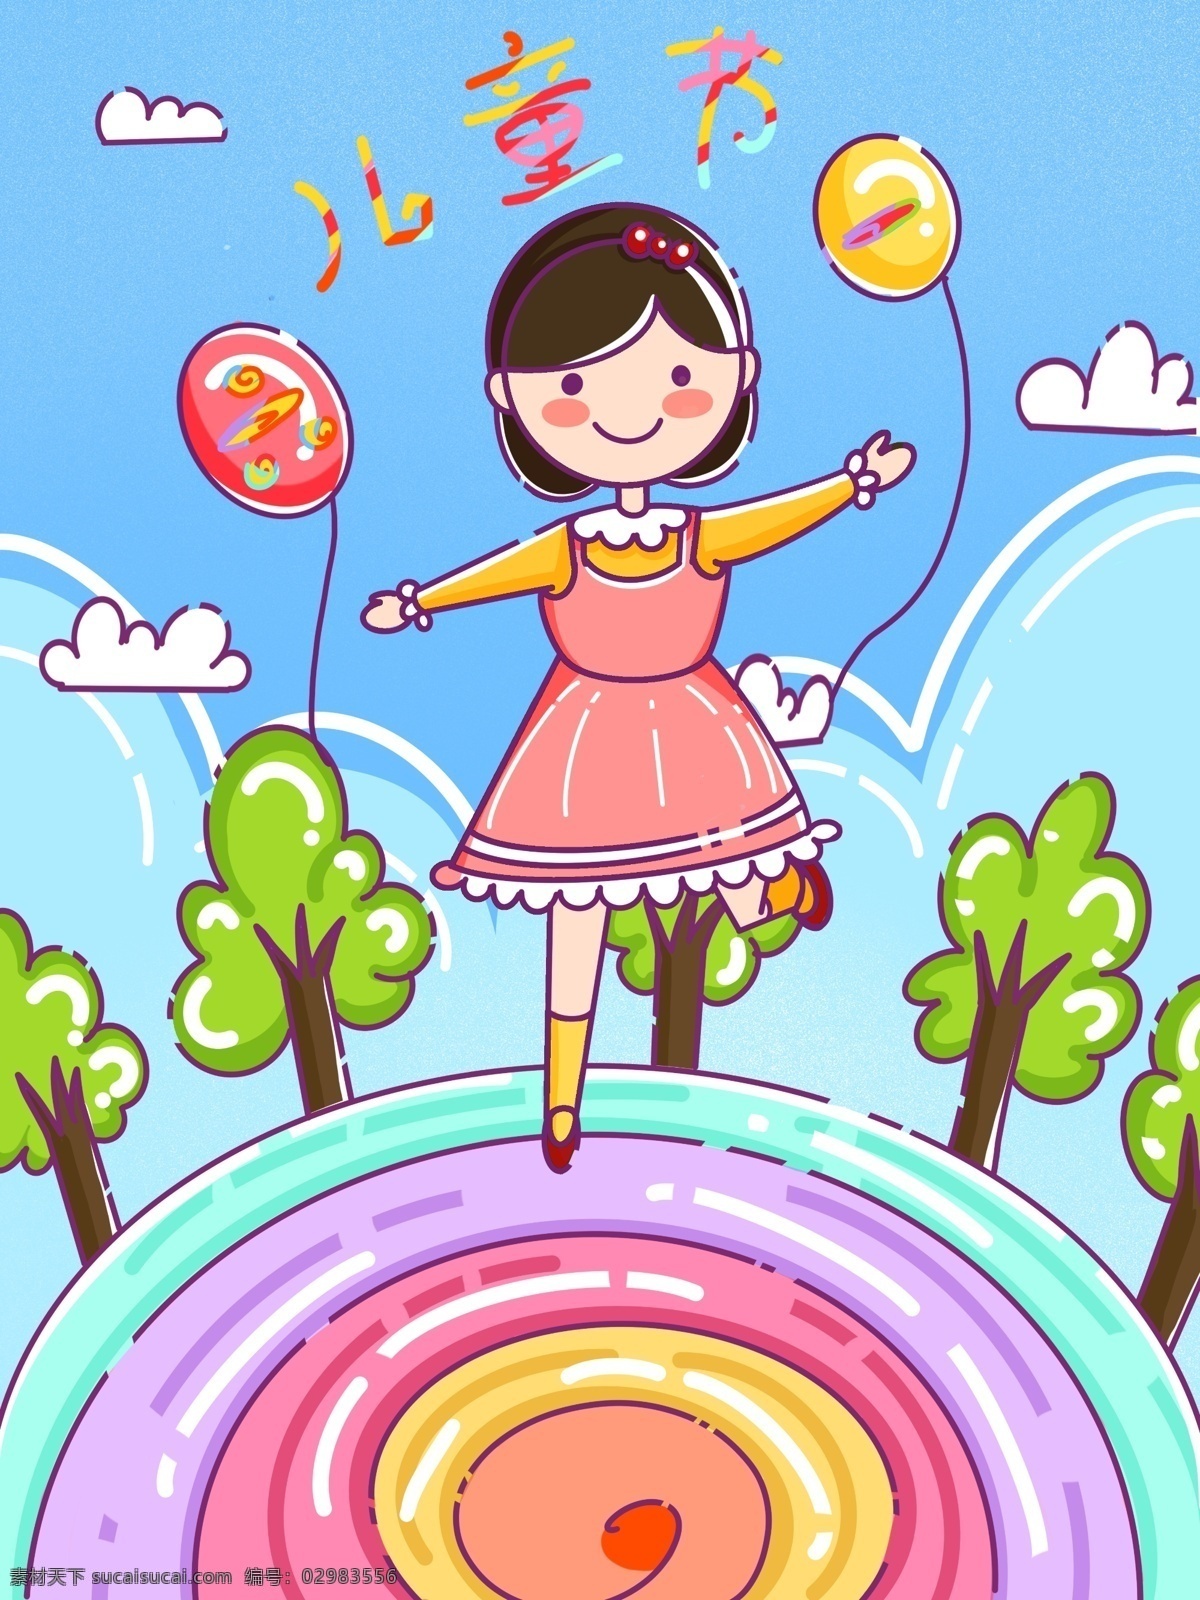 mbe 风格 六一儿童节 开心 孩子 气球 插画 海报 女孩 六一 儿童节 绿树 云朵 蓝色 圆盘